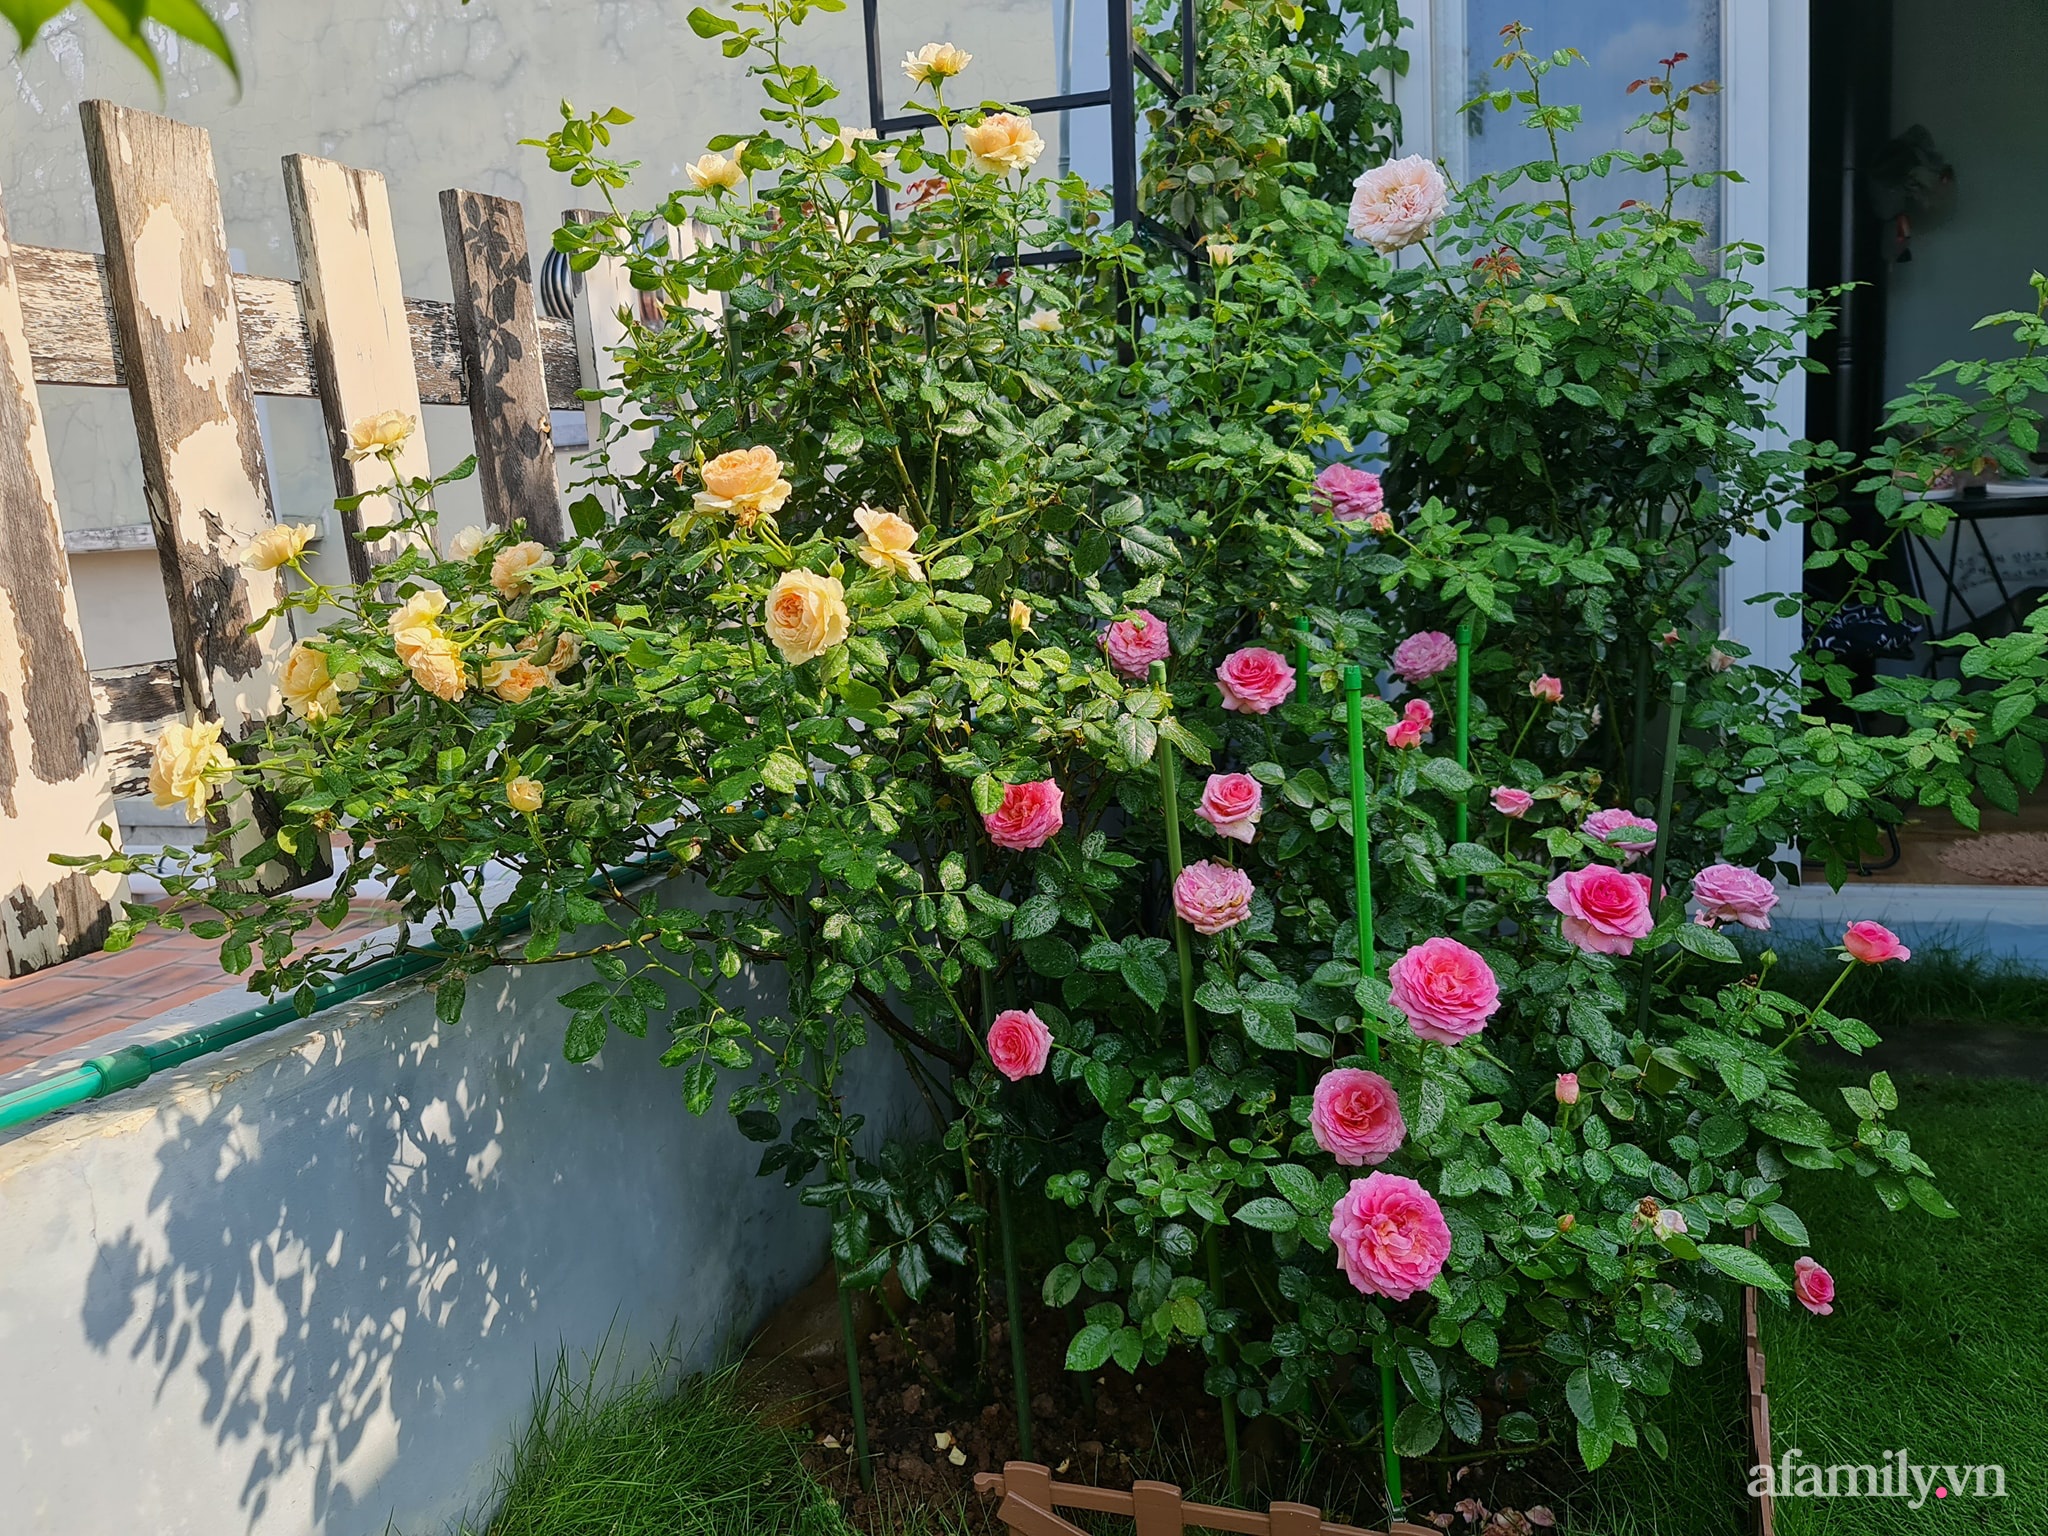 Đắm say trước vẻ đẹp ngọt lịm tim của vườn hồng rực rỡ trên sân thượng ở Bình Dương - Ảnh 10.